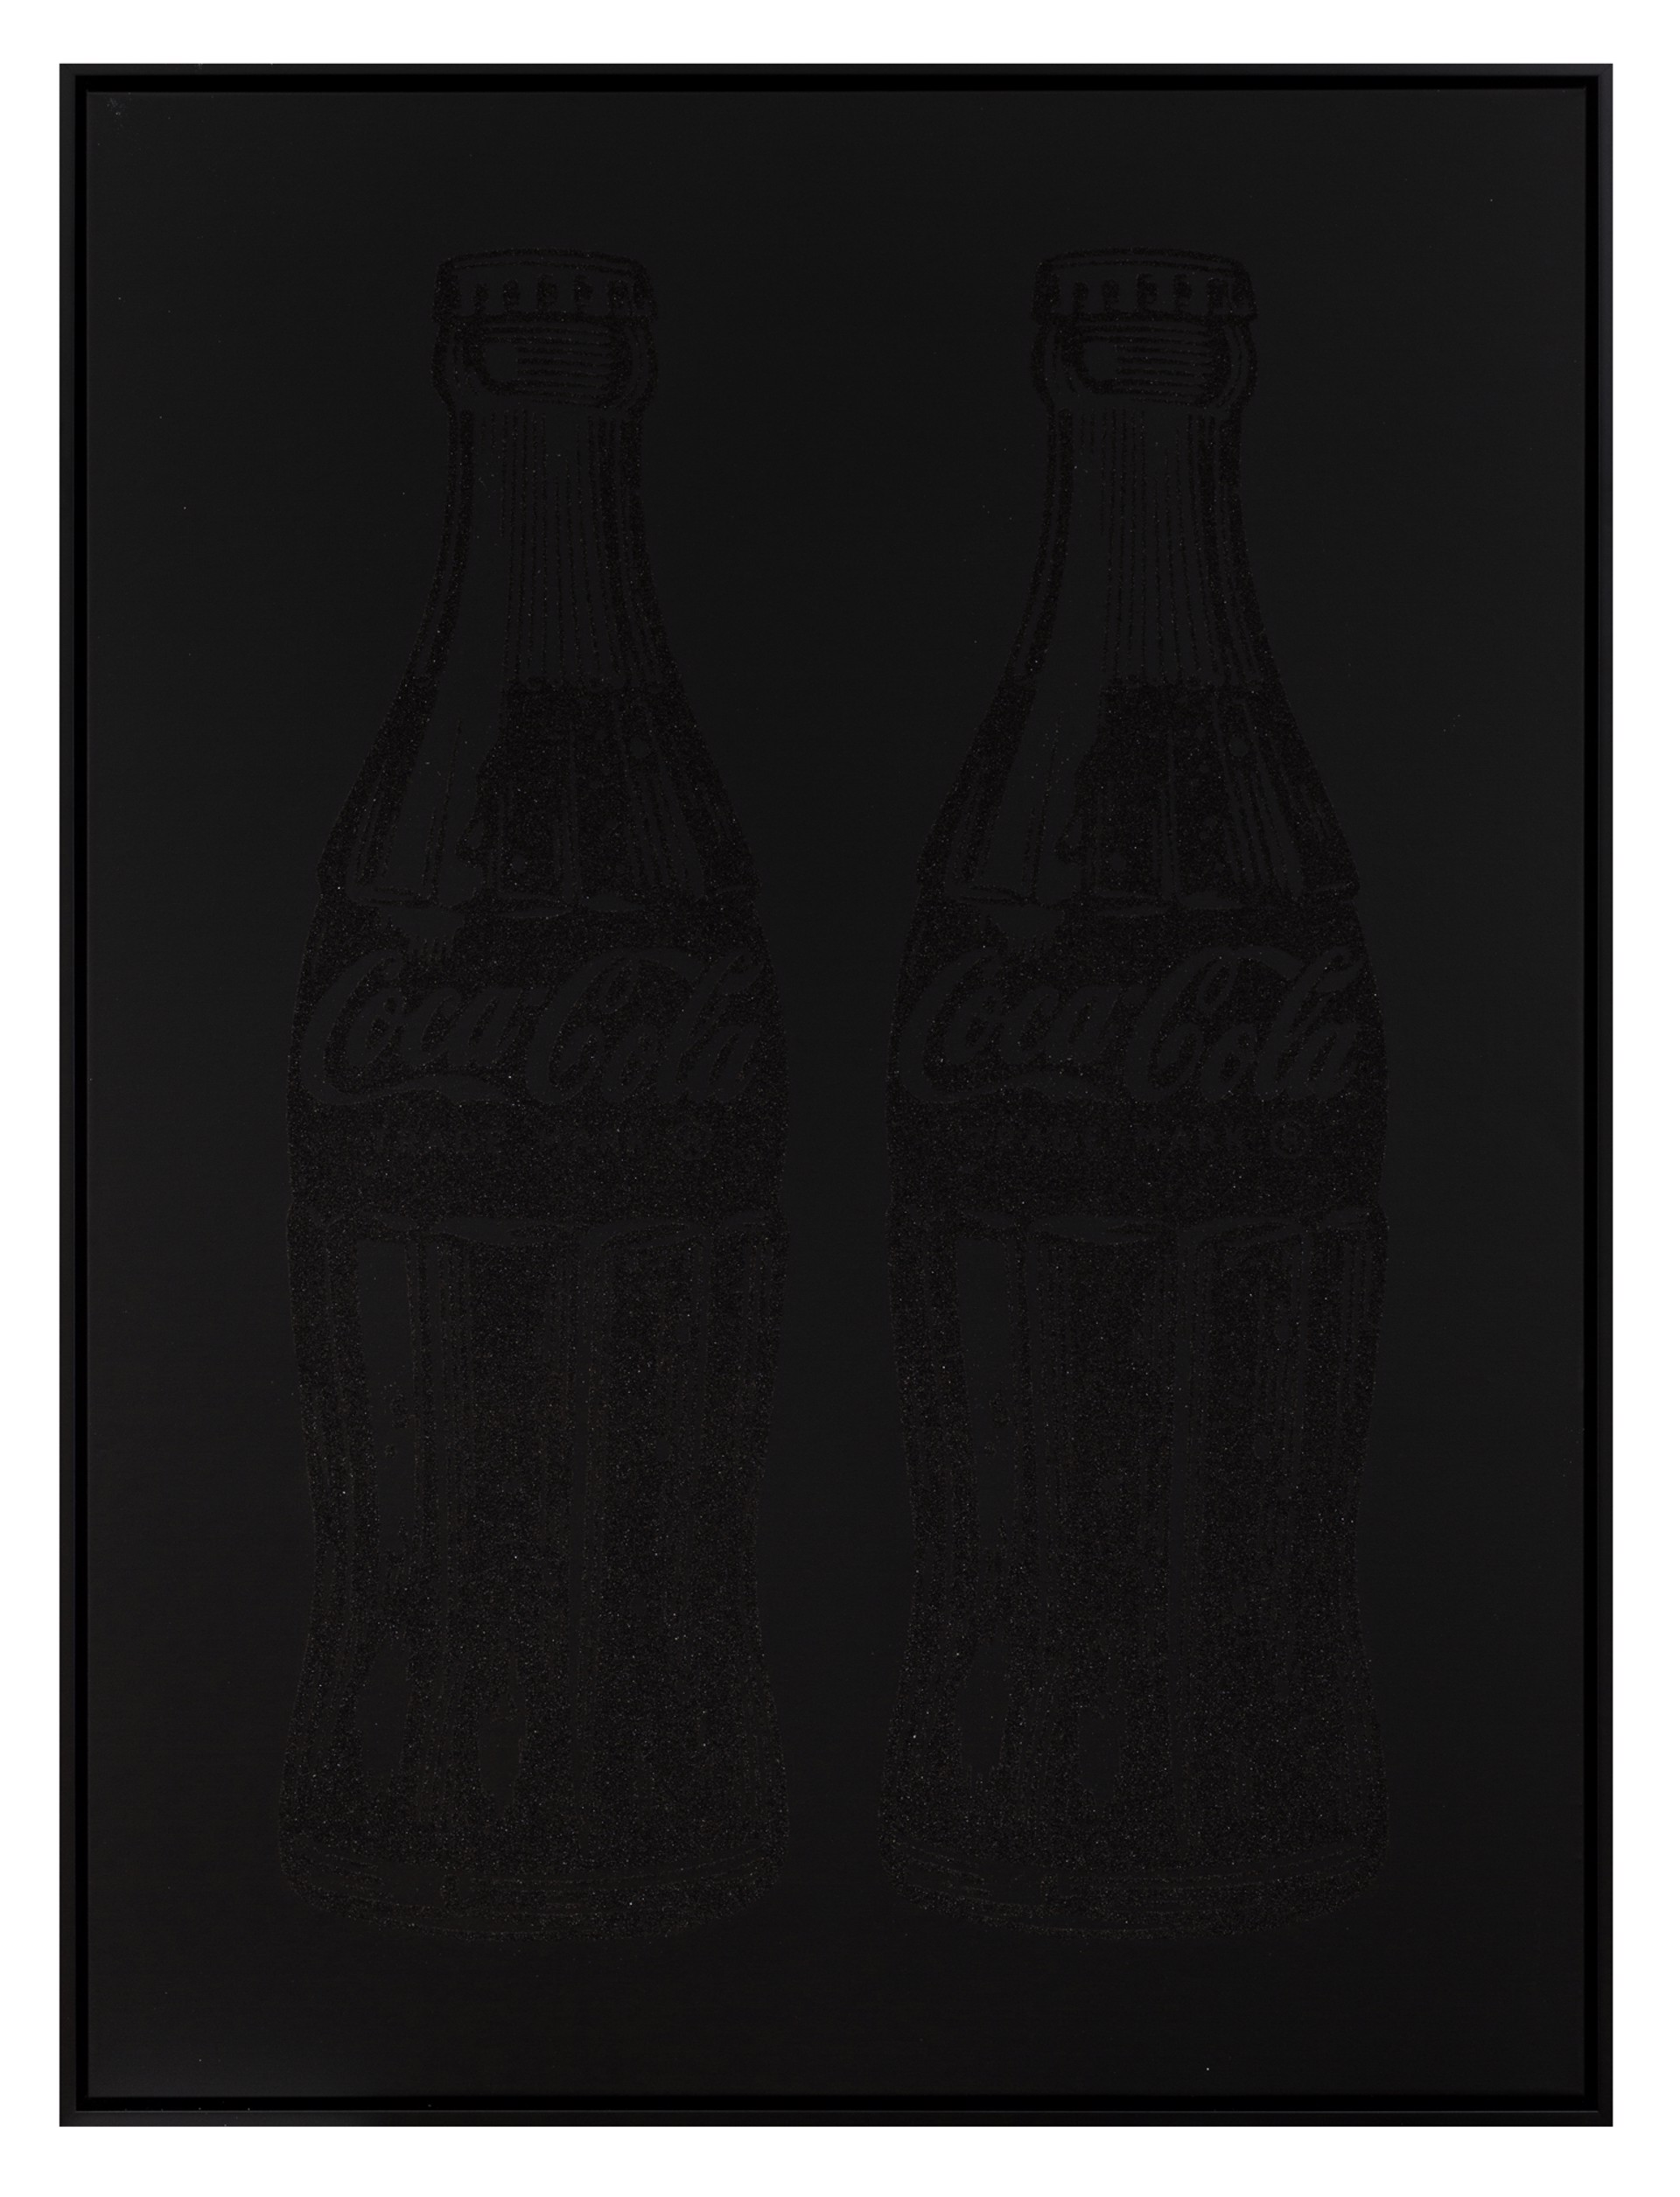 Double Coca-Cola (black on black) by Cey Adams